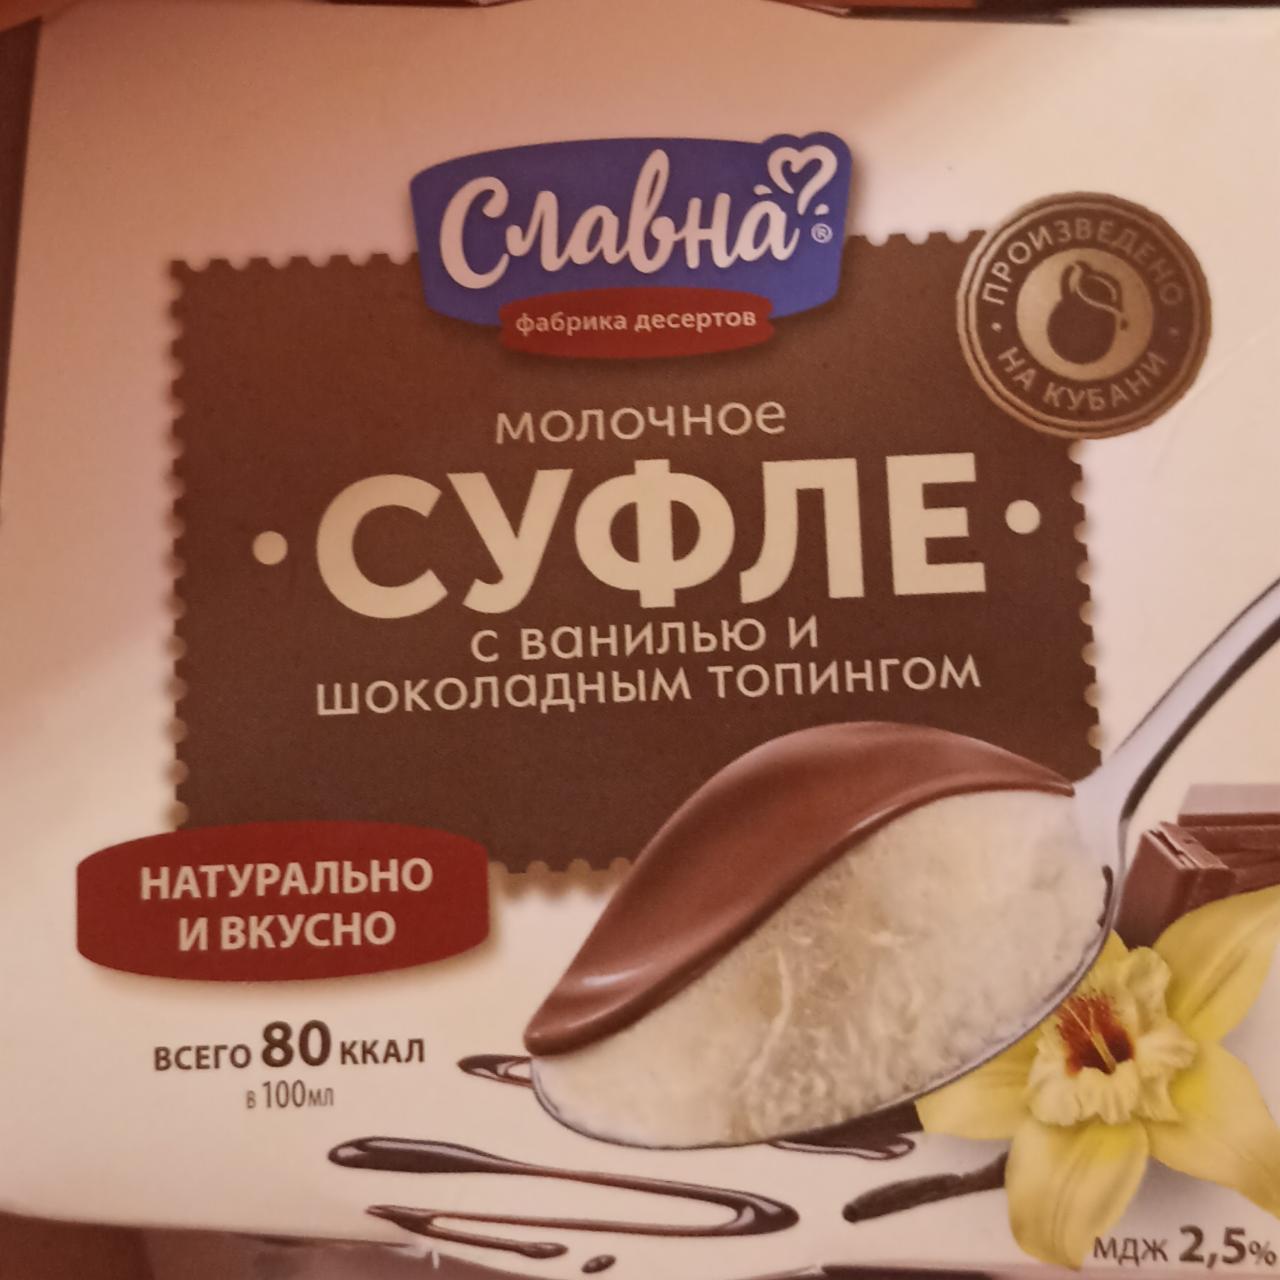 Фото - молочное суфле с ванилью и шоколадным топингом Славна